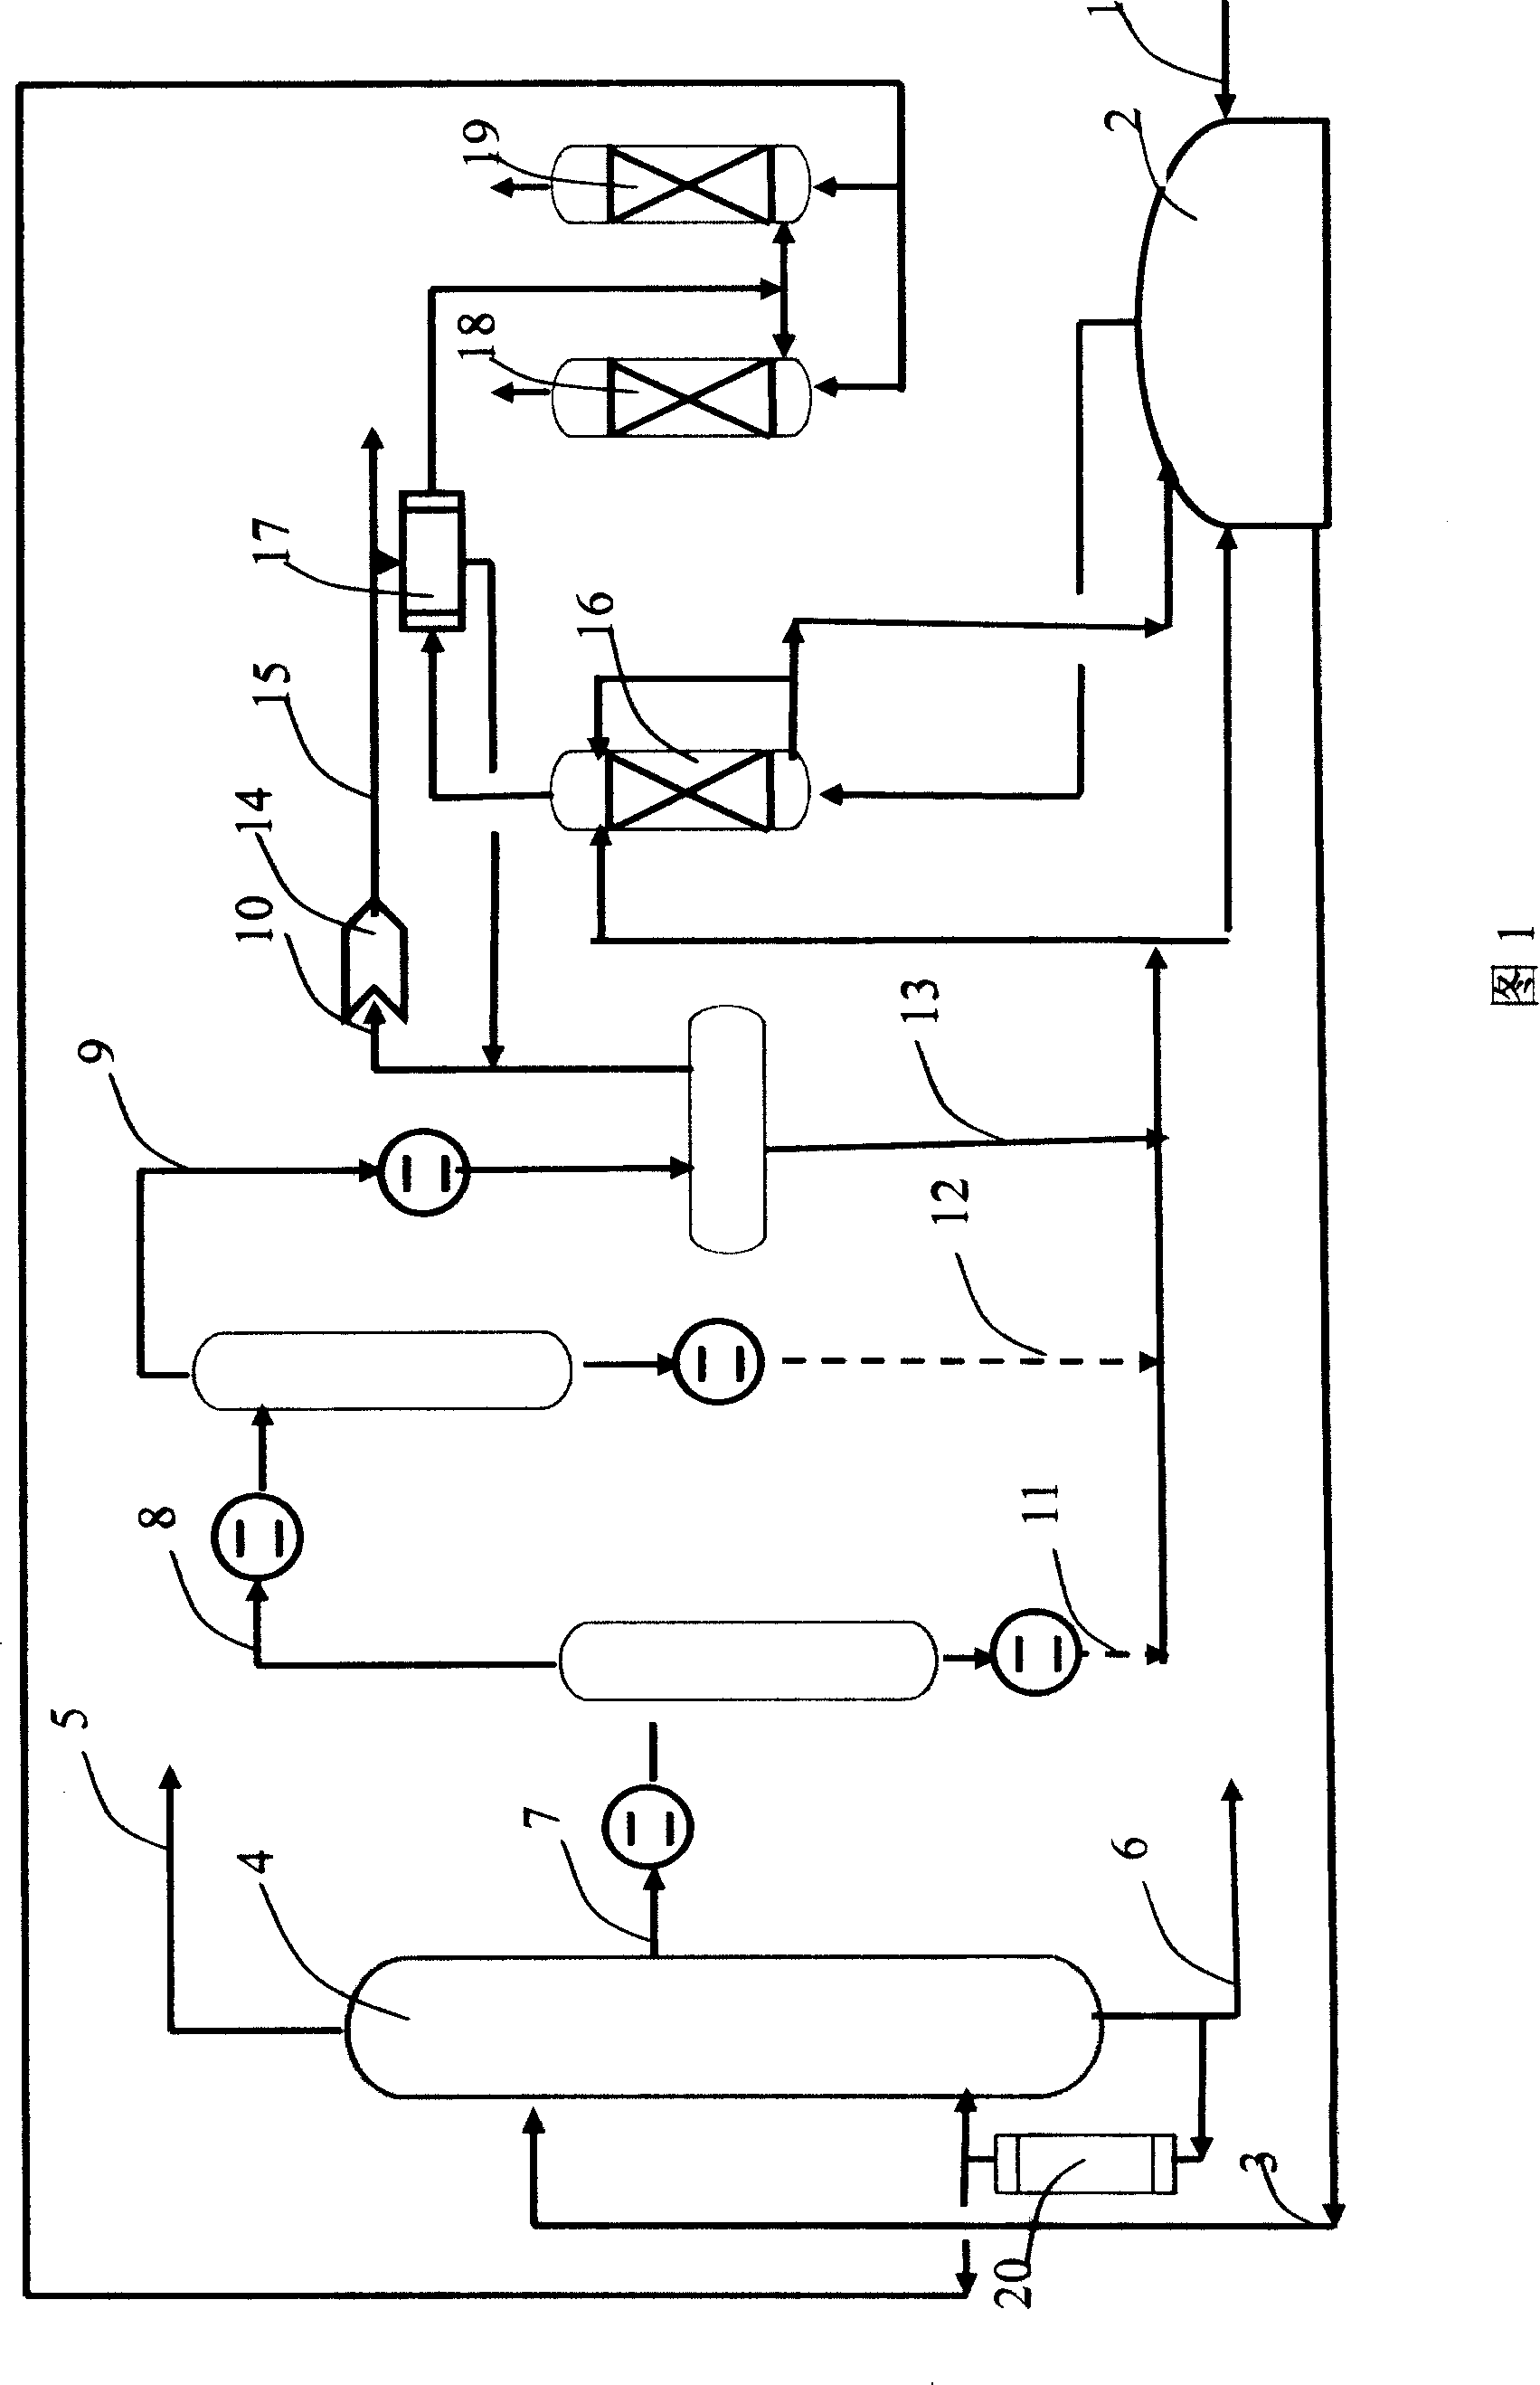 Processing method of sewage storage tank discharging gas